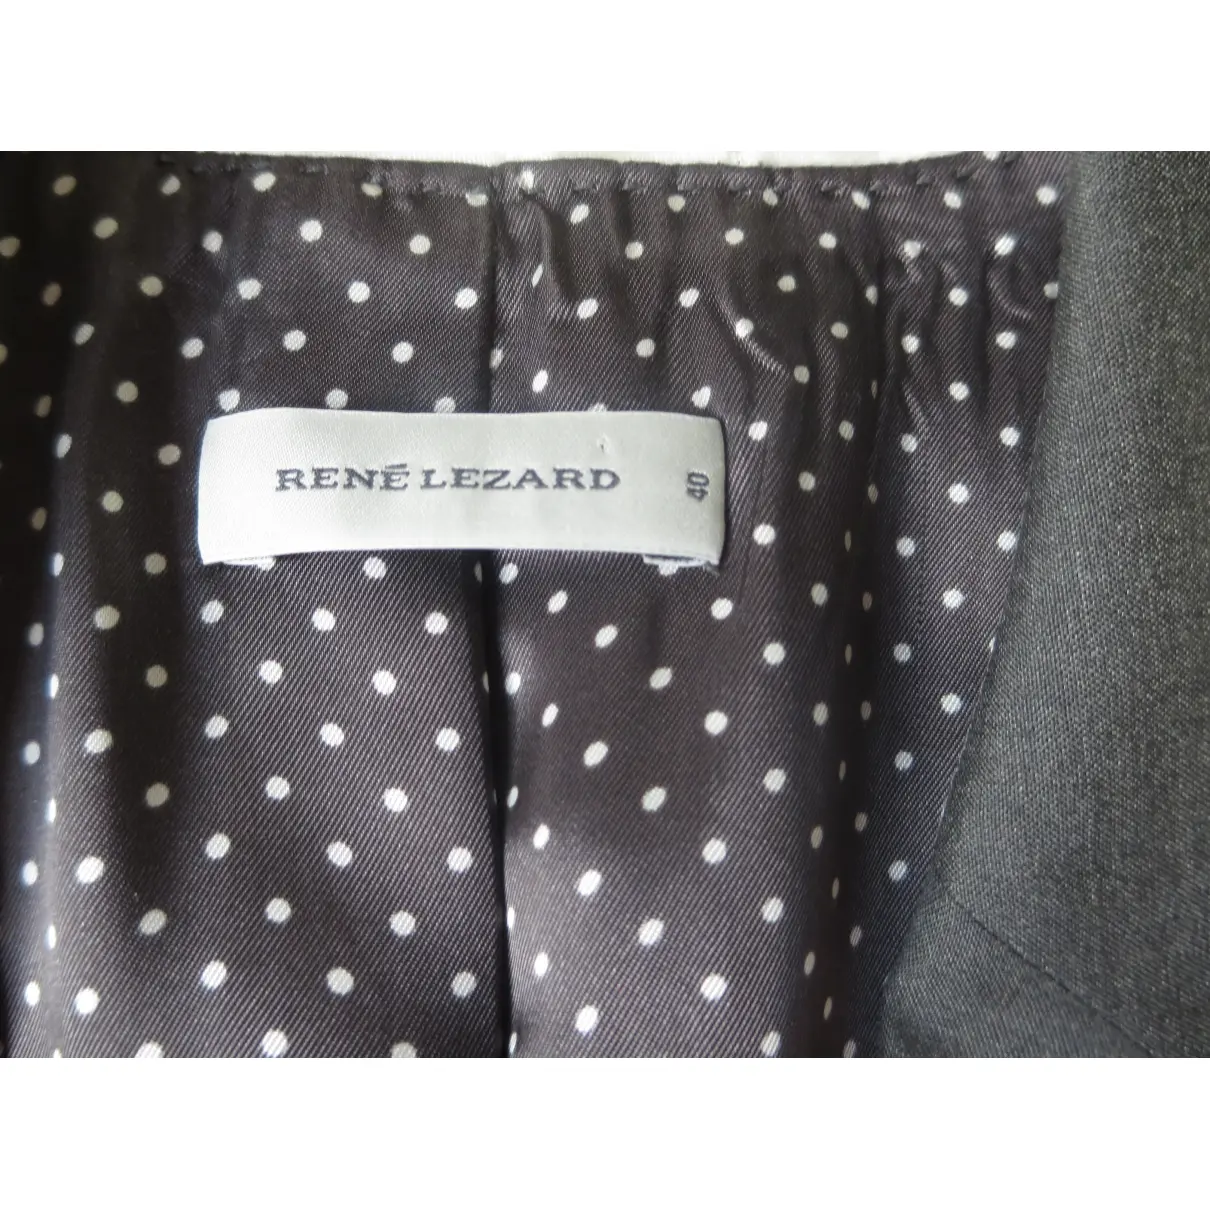 Buy RENÉ LEZARD Wool suit jacket online